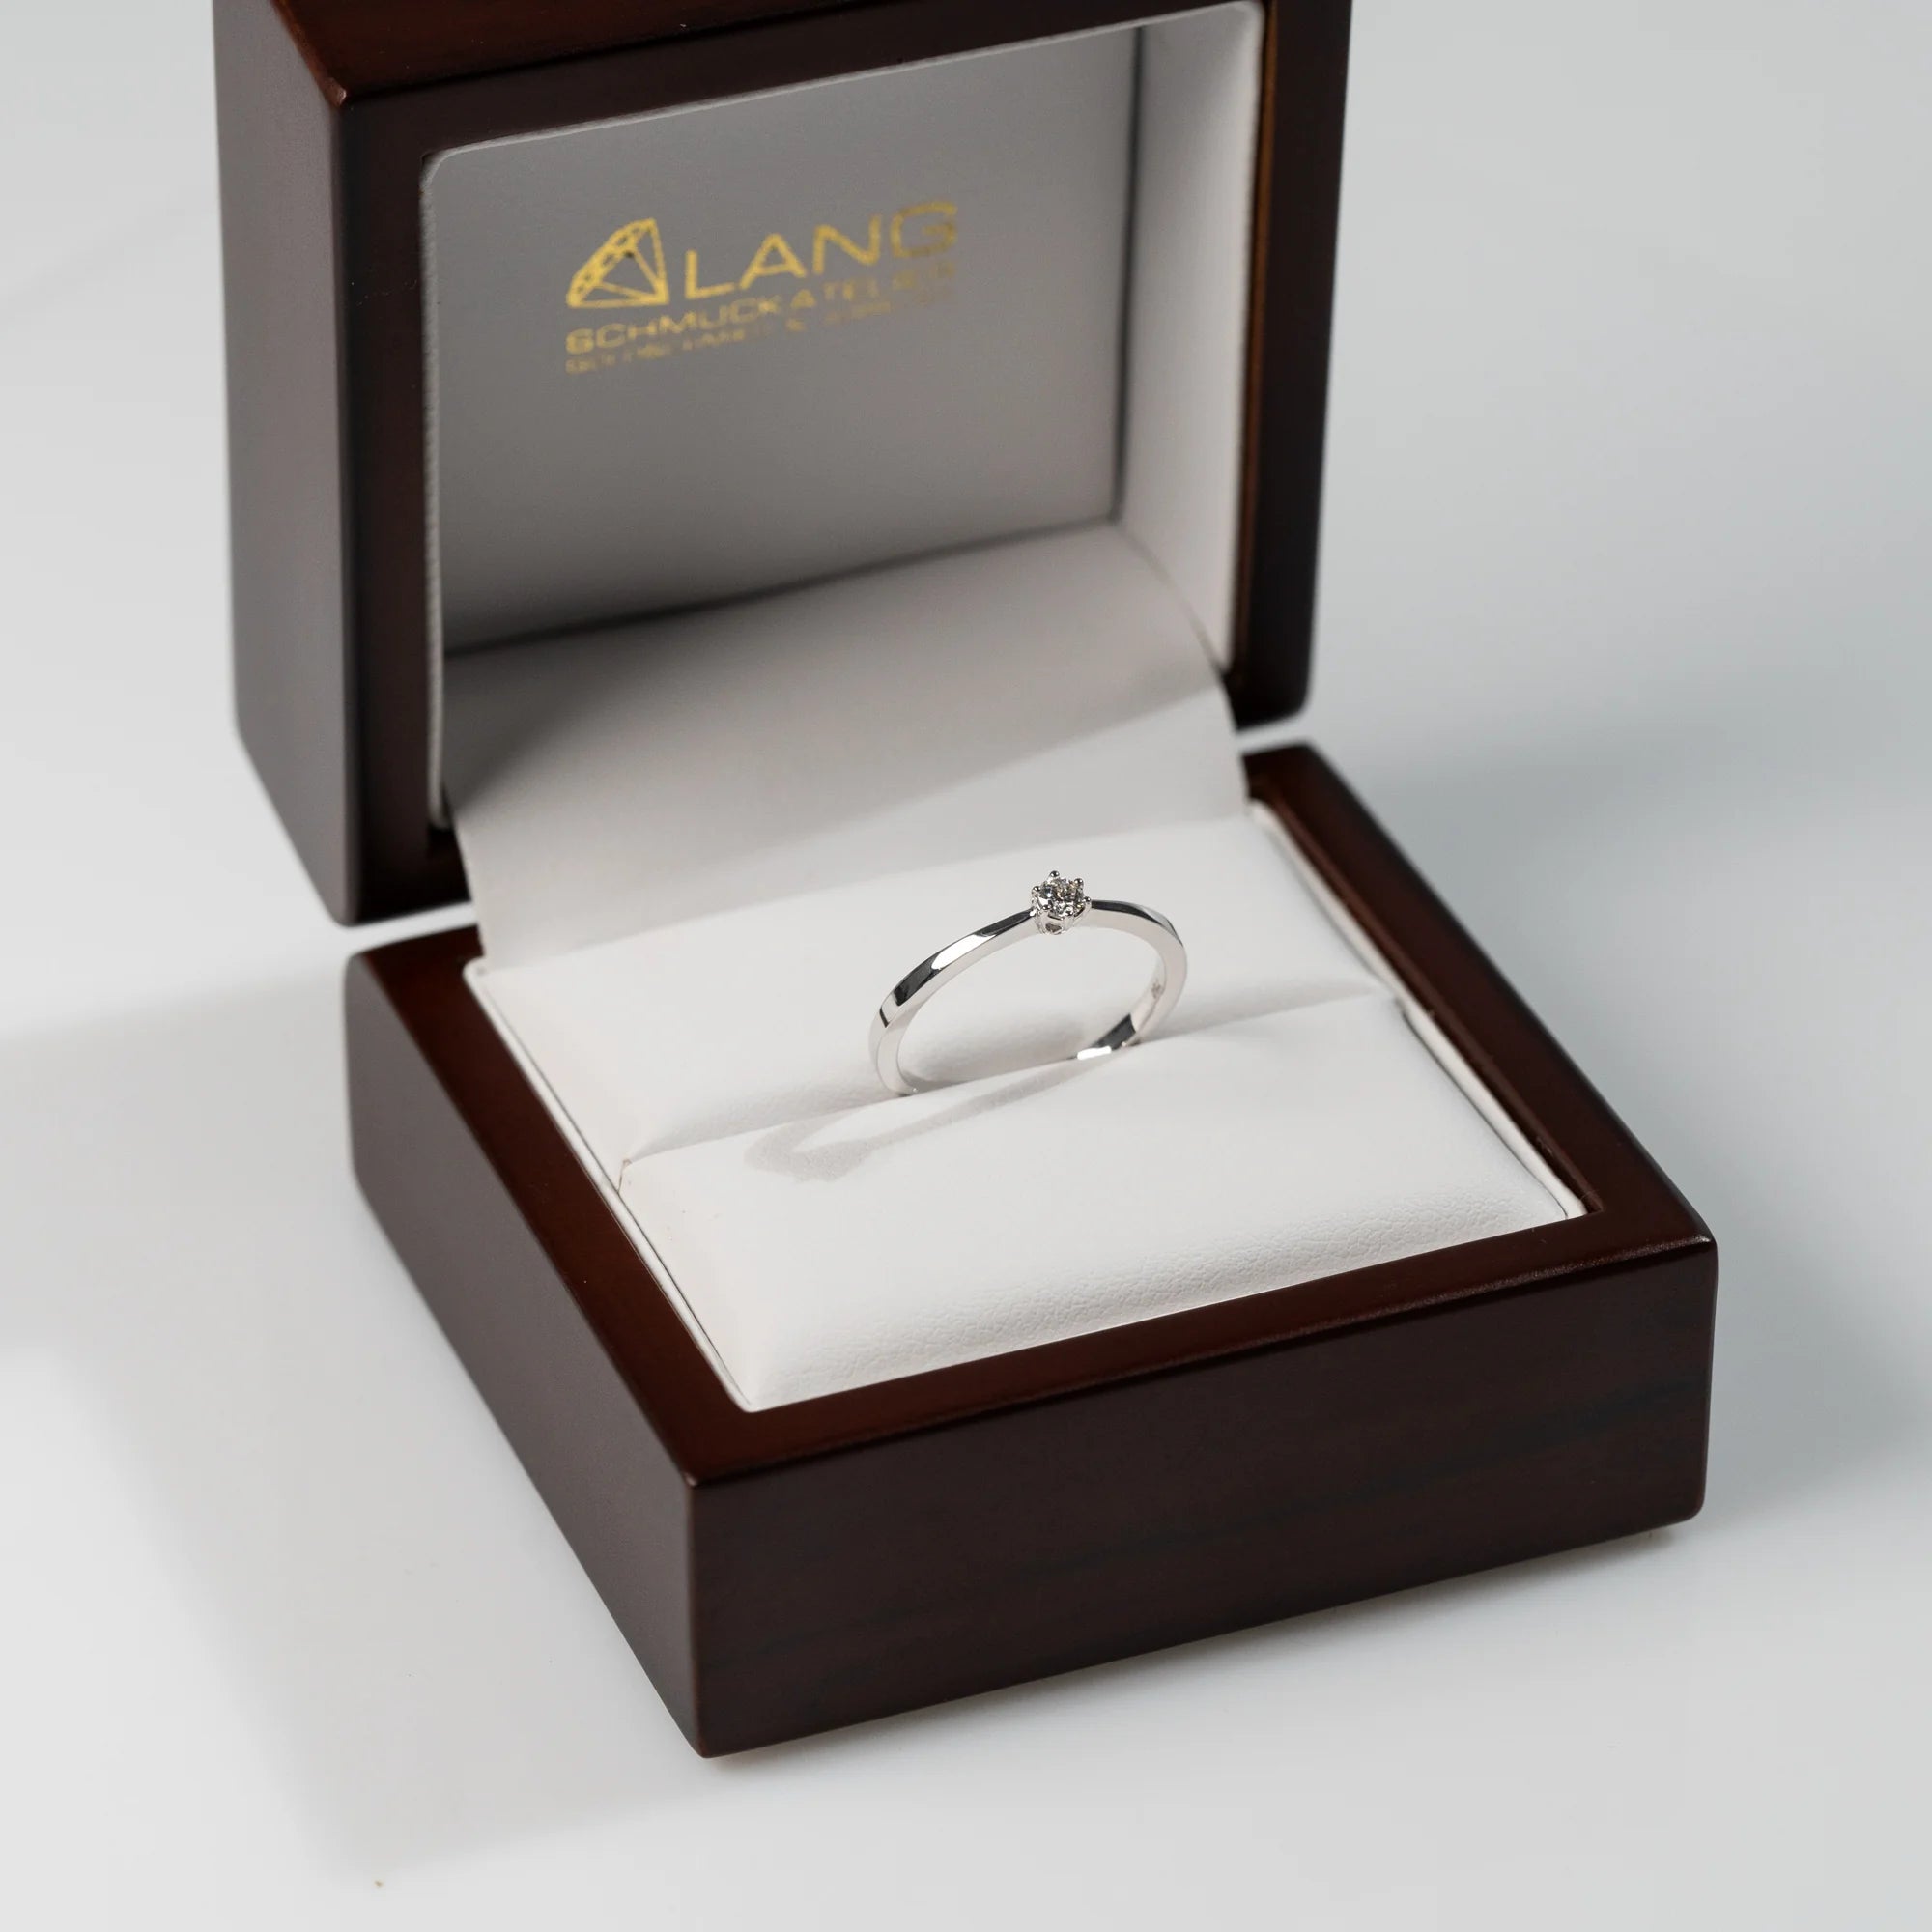 Verlobungsring "Promise" aus der Schmuckatelier Lang Collection mit einem in einer 6er Kappe gefassten Diamanten steckt in der hölzernen Schmuck-Box